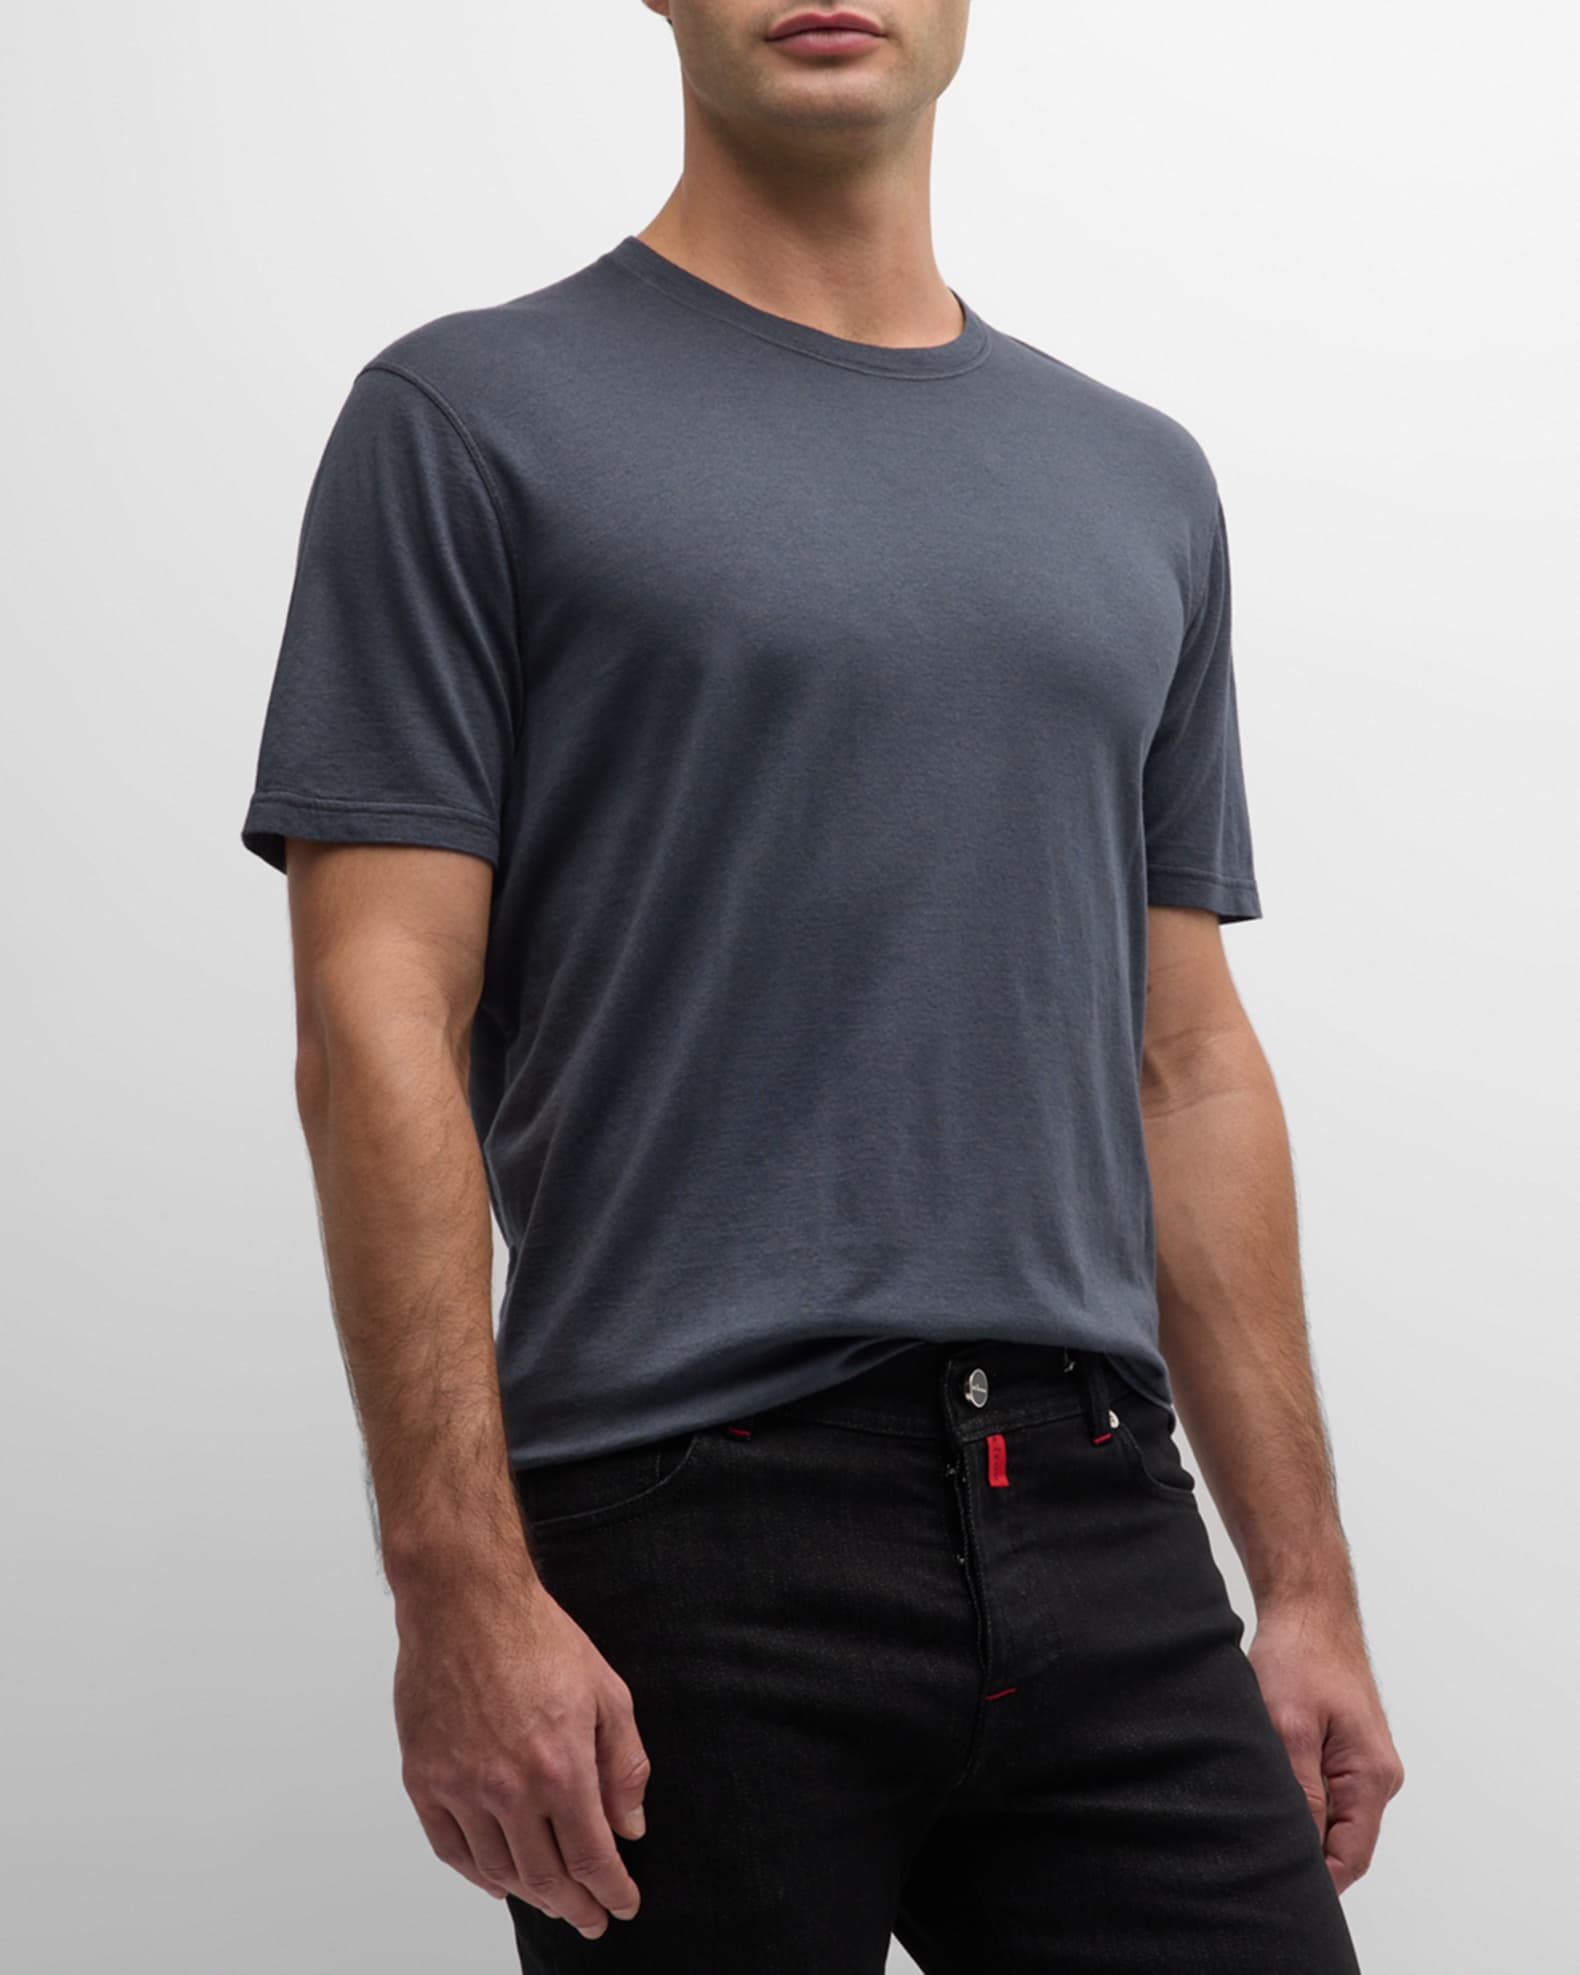 Grey Cotton / Cashmere Round Neck T-Shirt MEN